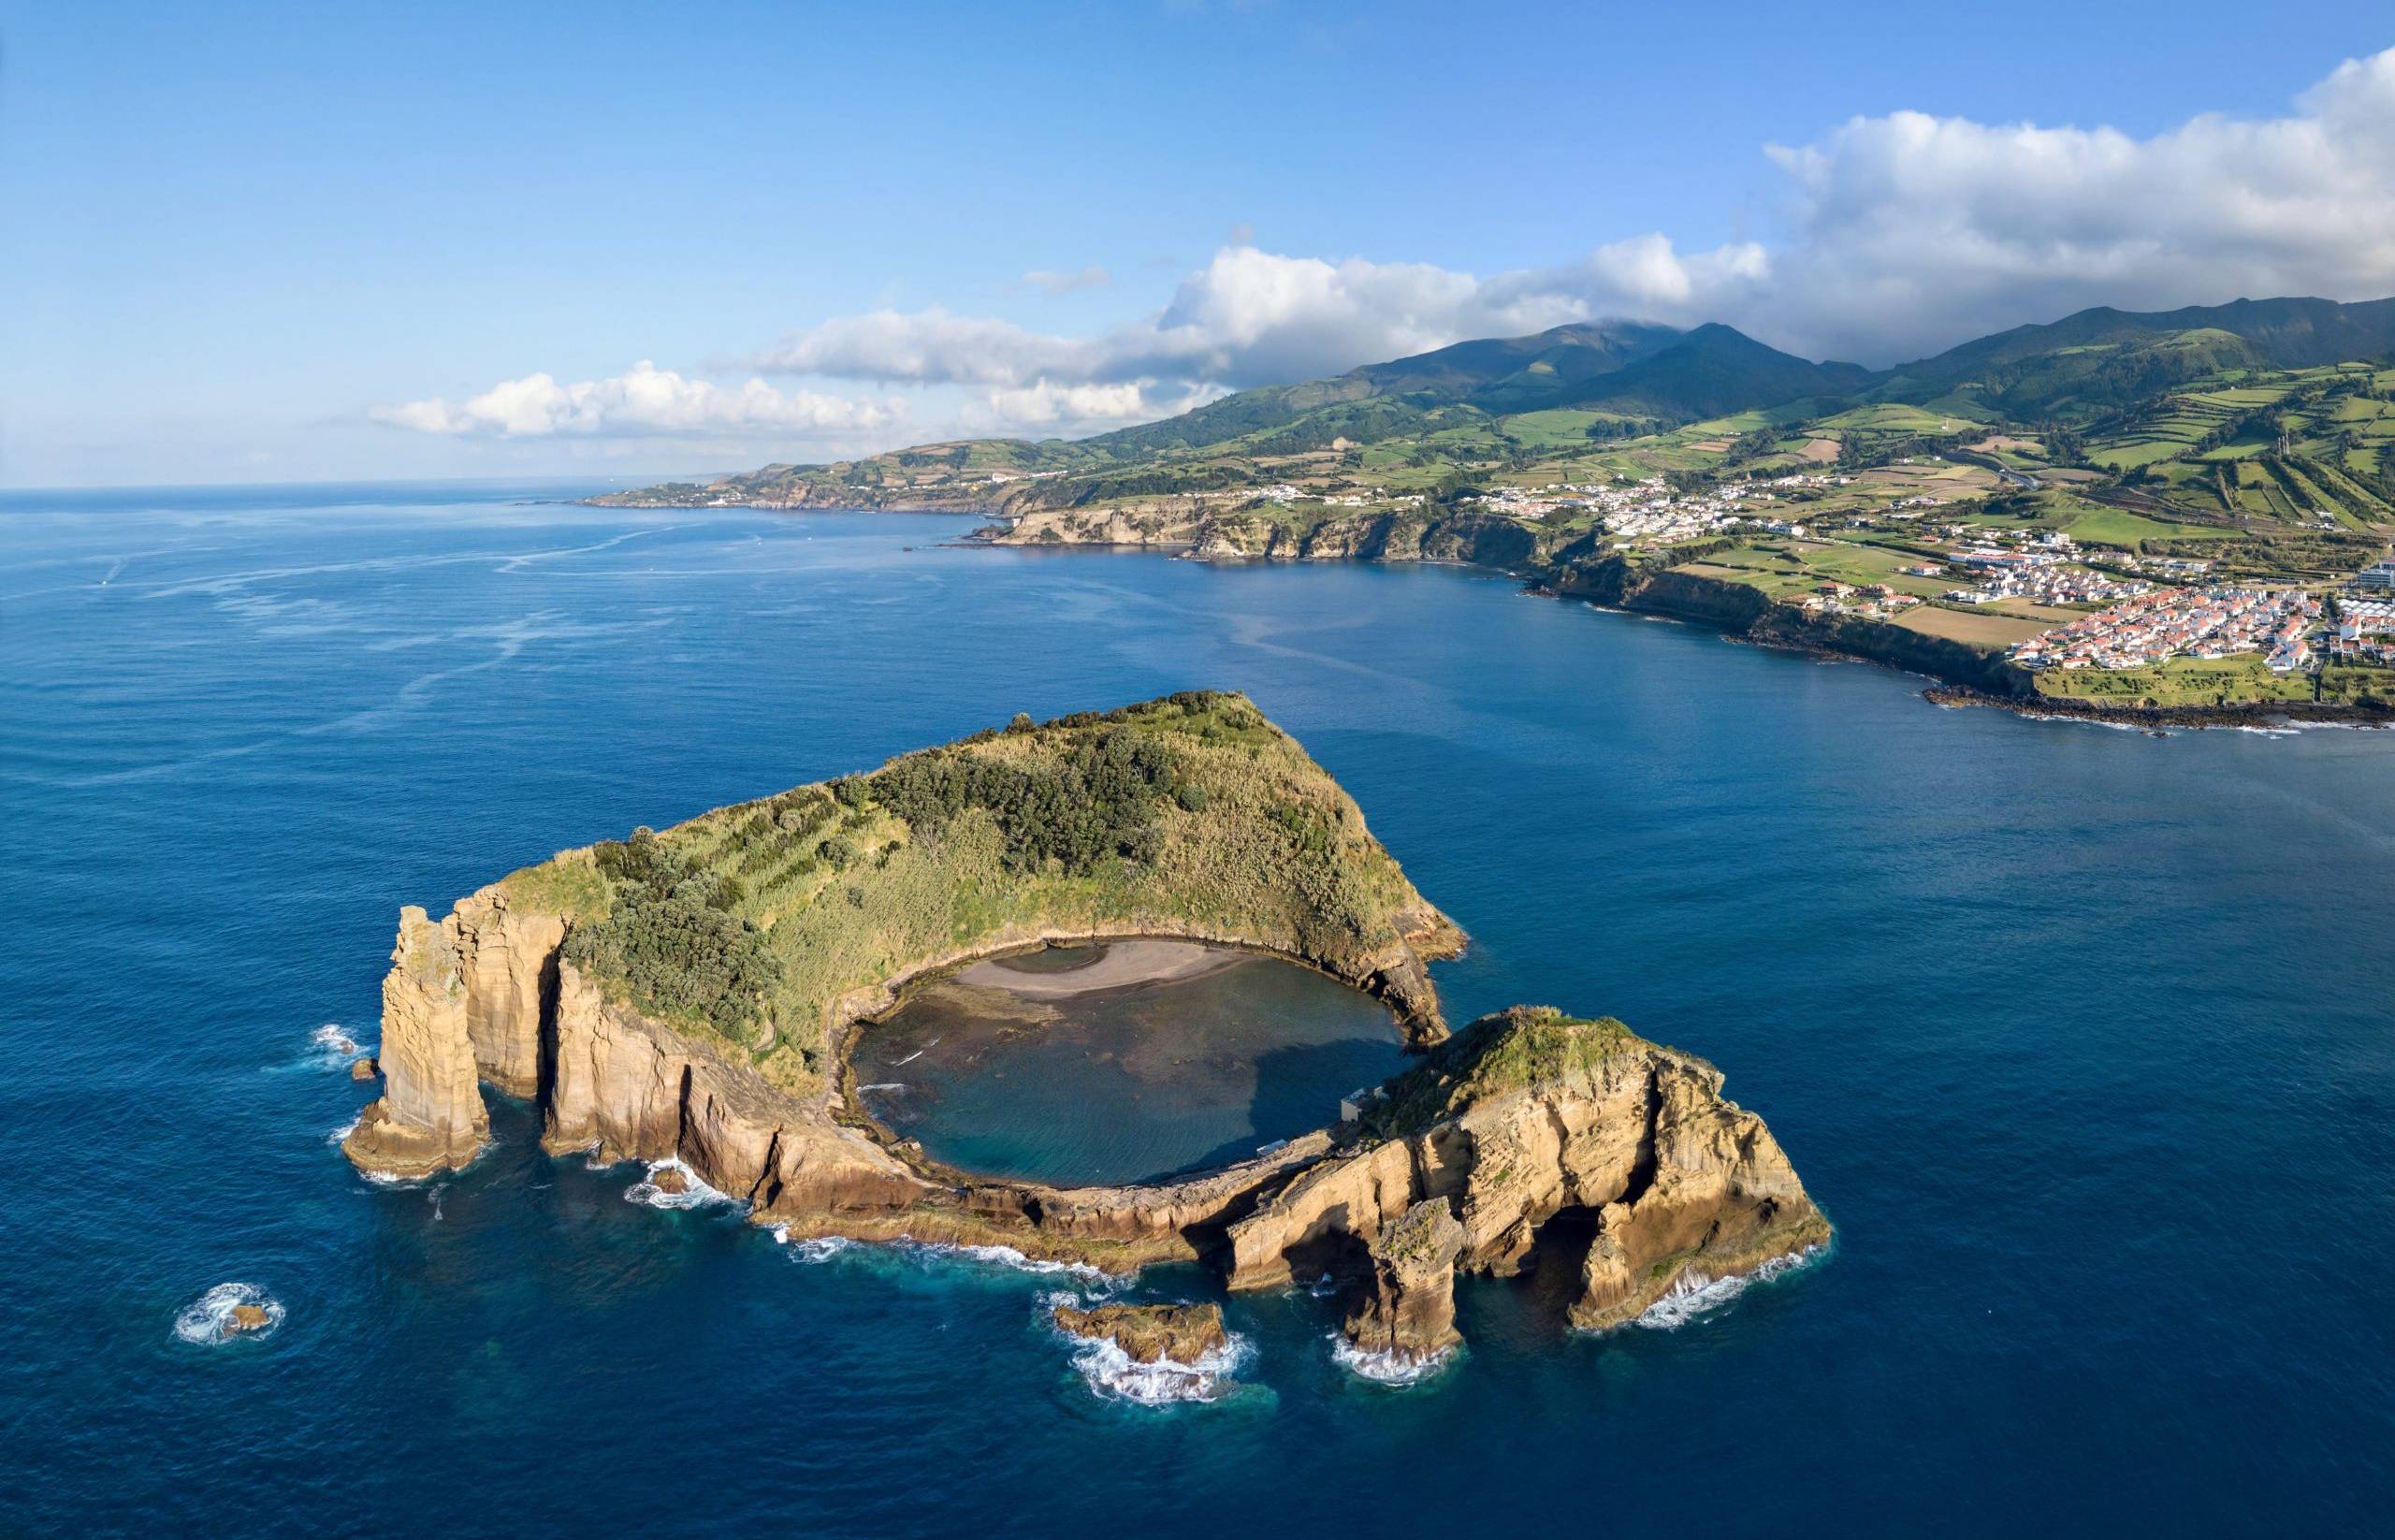 Bienvenue aux Açores